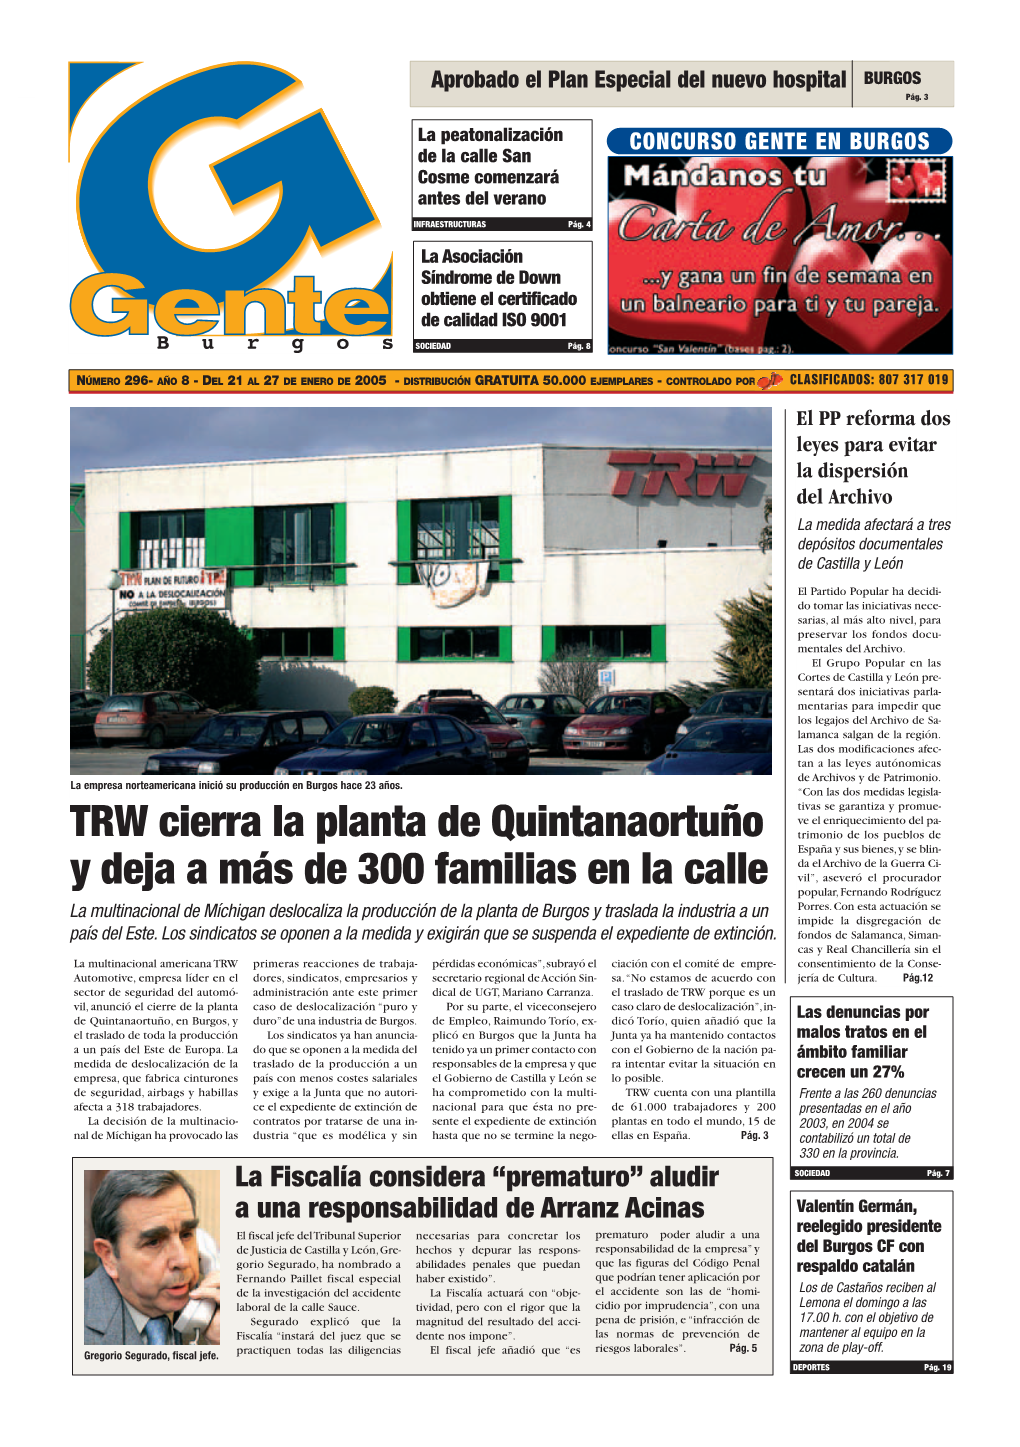 TRW Cierra La Planta De Quintanaortuño Y Deja a Más De 300 Familias En La Calle